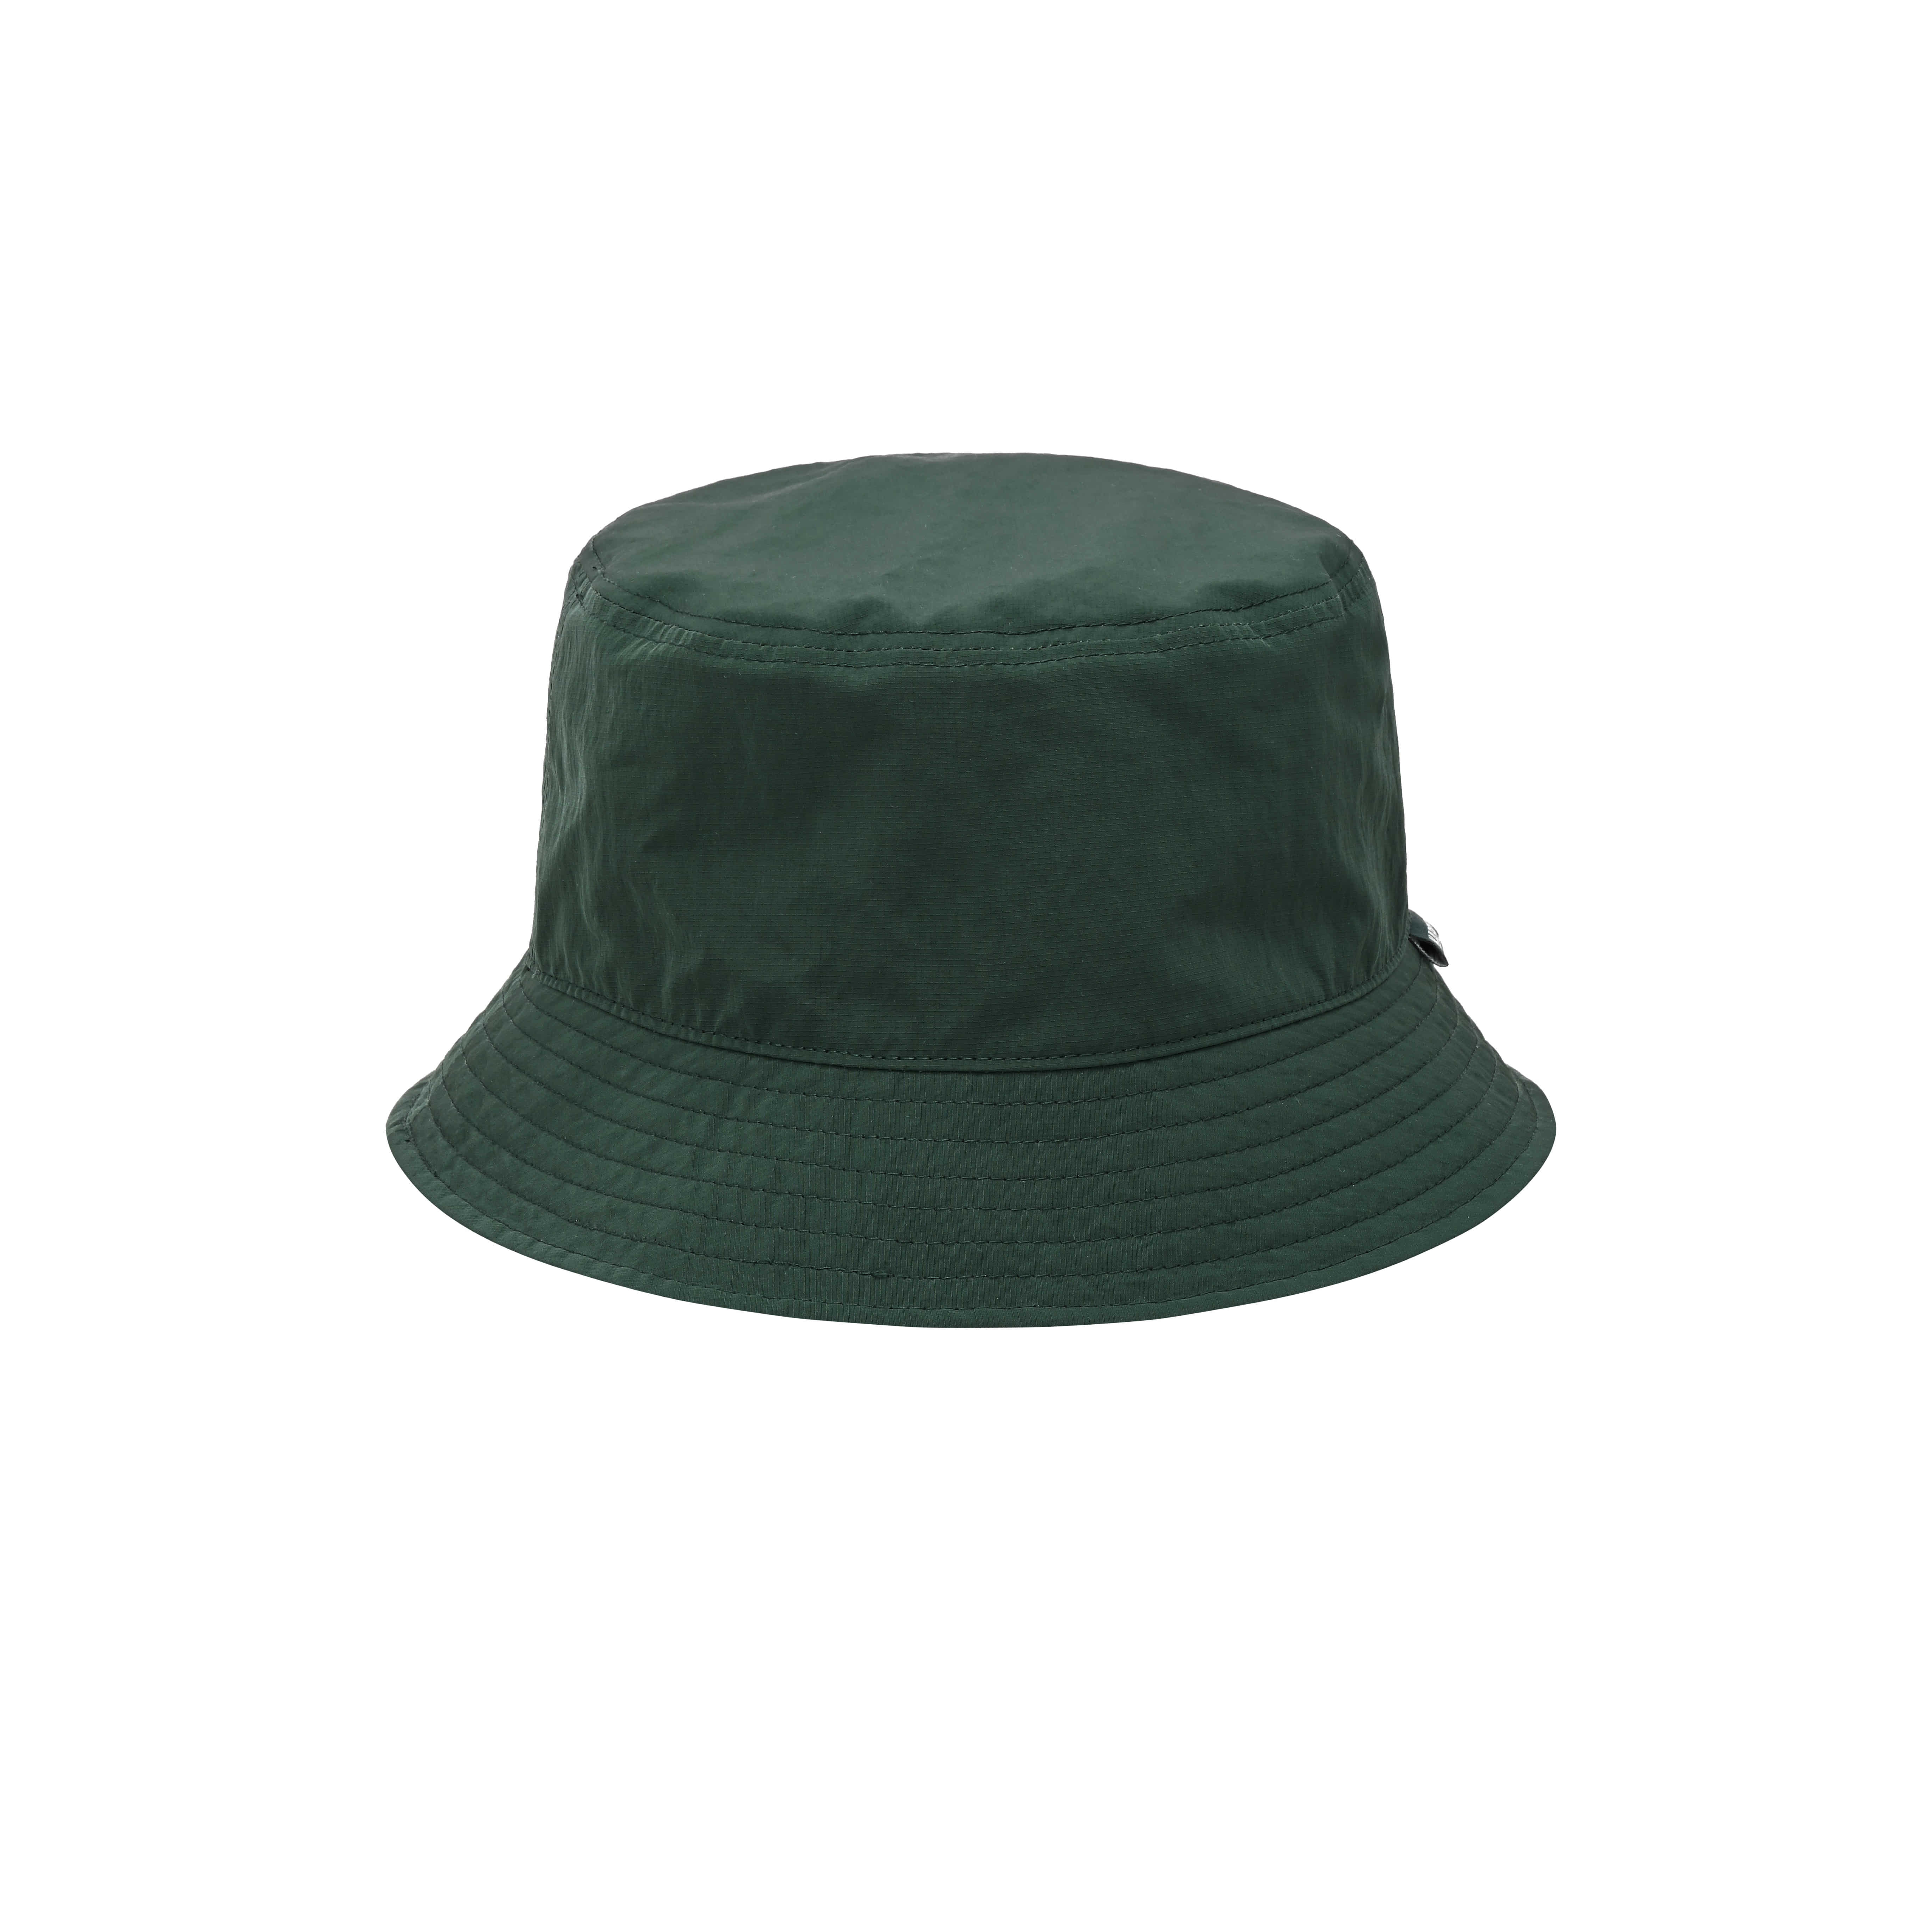 Reversible bucket hat green black